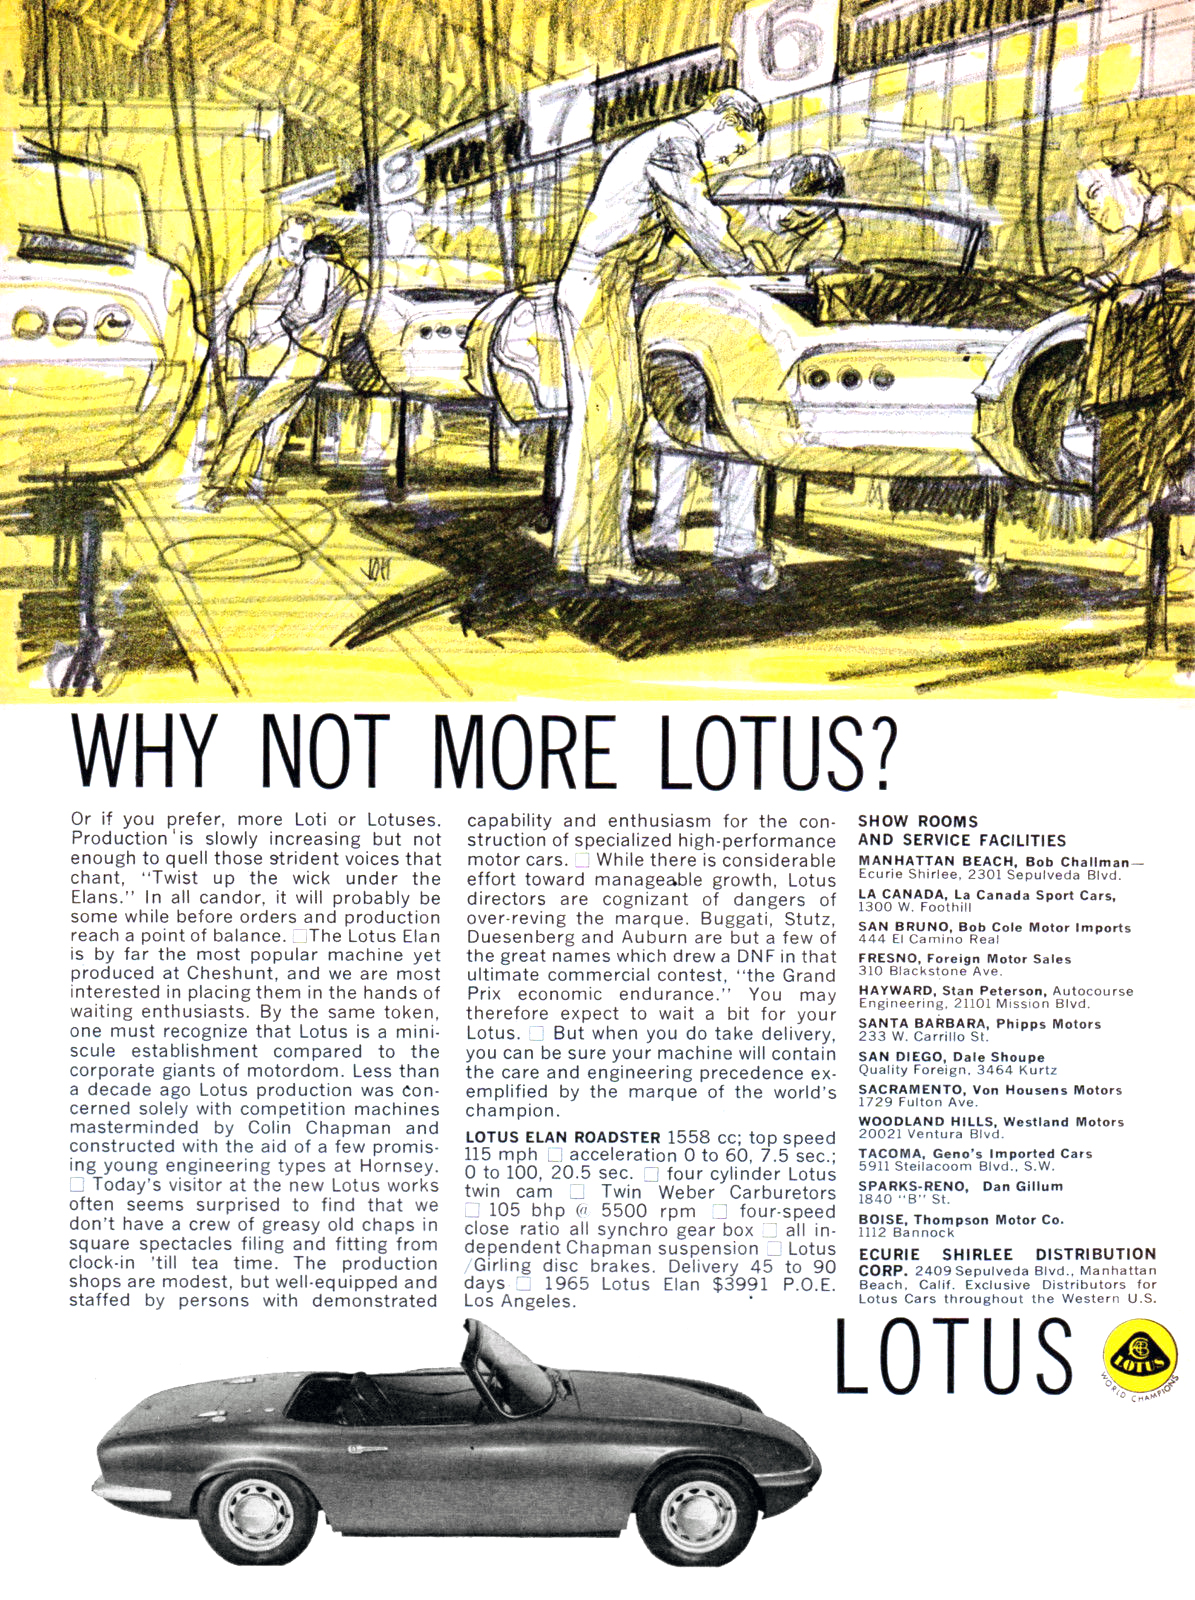 Lotus Elan Roadster Ad (1964) - Why not more Lotus?